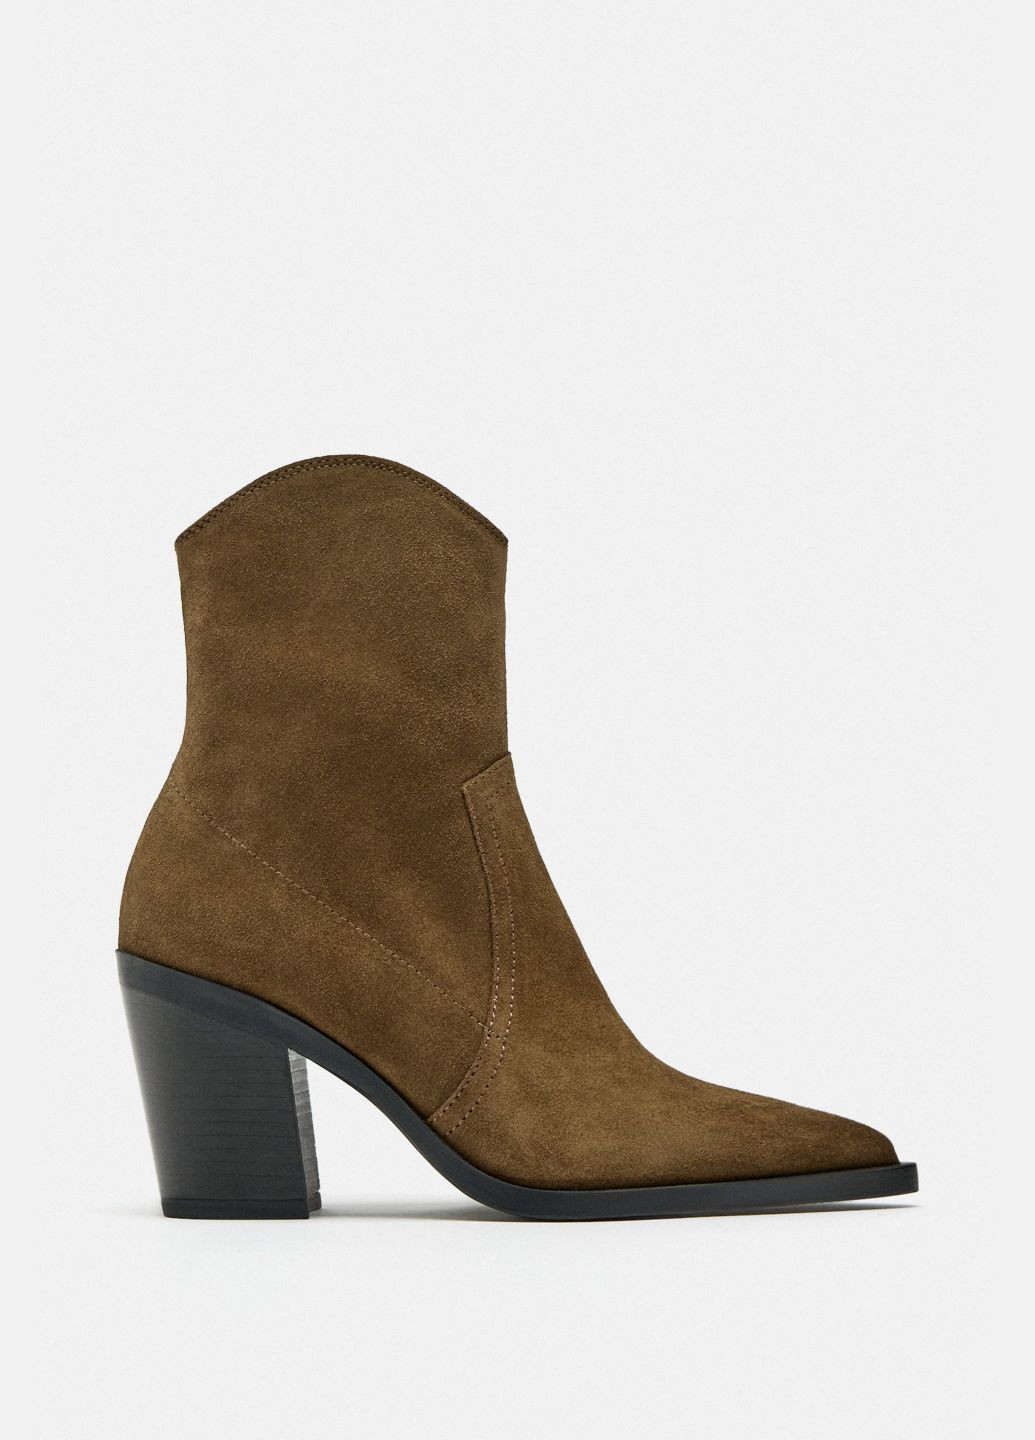 Осенние женские кожаные ботинки 39 размер коричневые 2109210113 Zara из натуральной замши